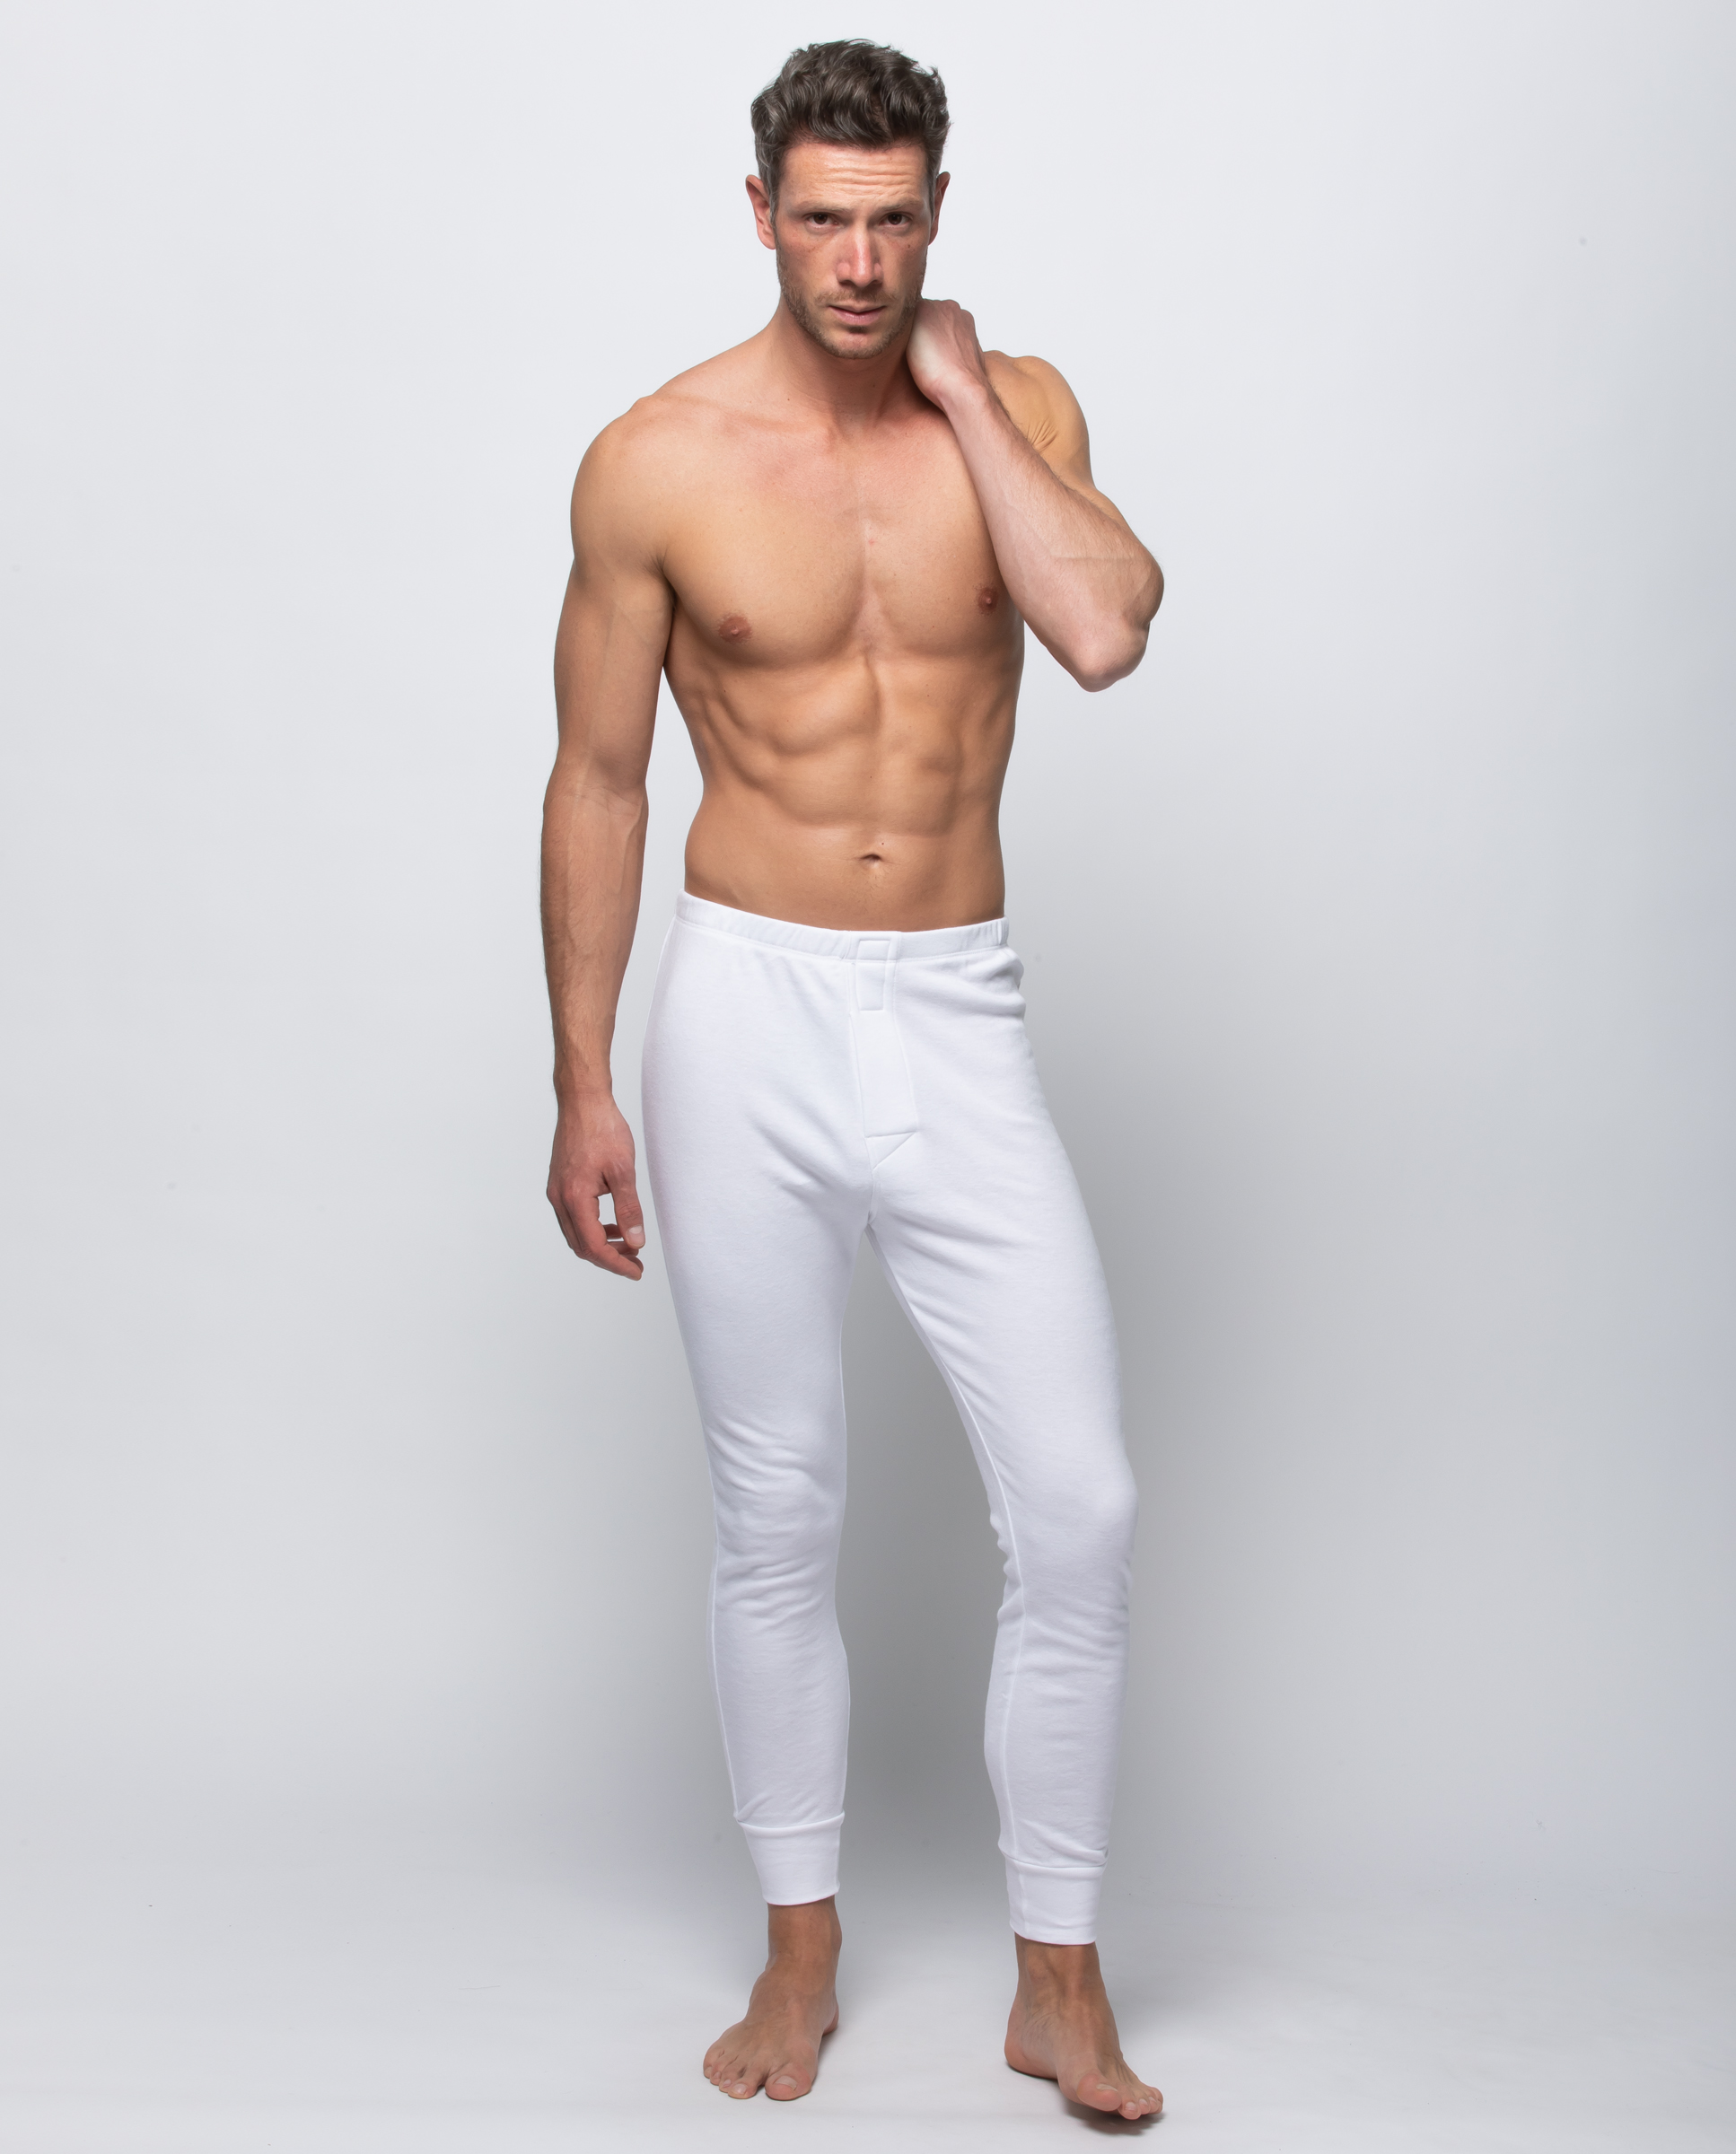 Camiseta interior térmica de hombre en blanco de manga larga · Abanderado ·  El Corte Inglés